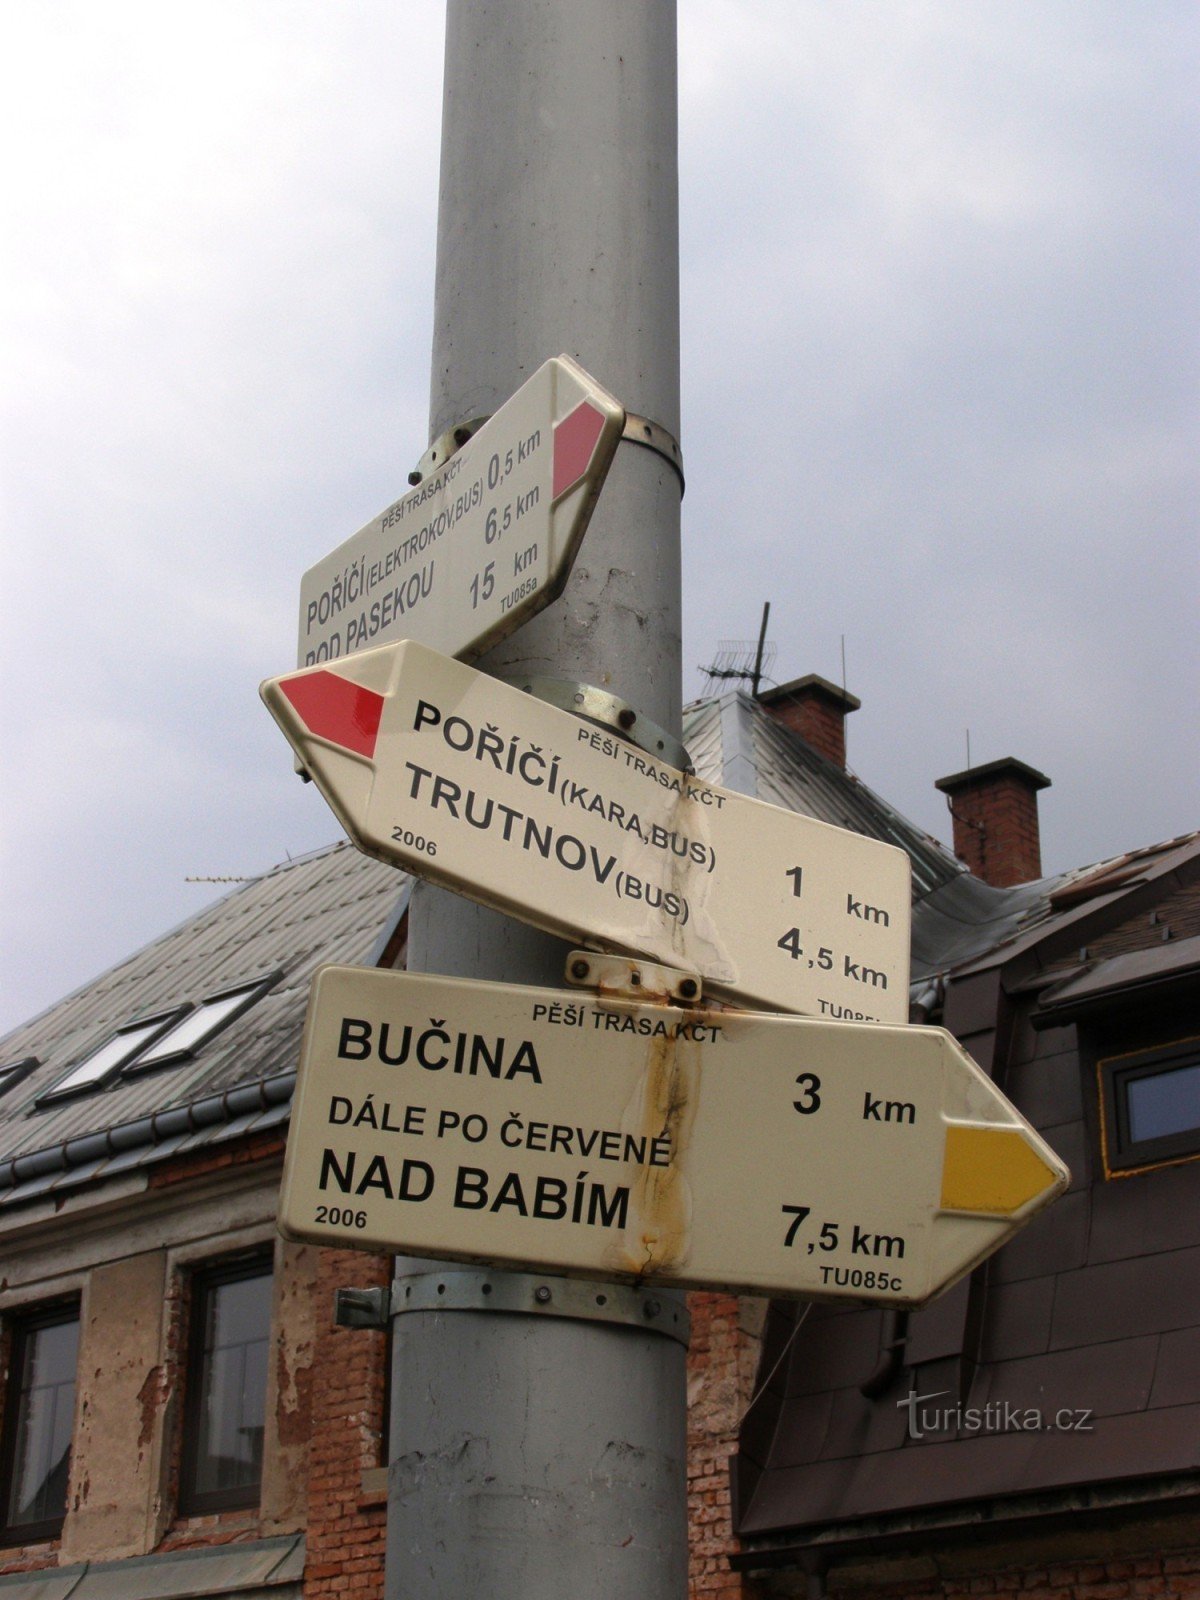 turisztikai útkereszteződés Trutnov, Poříčí - a játszótér közelében